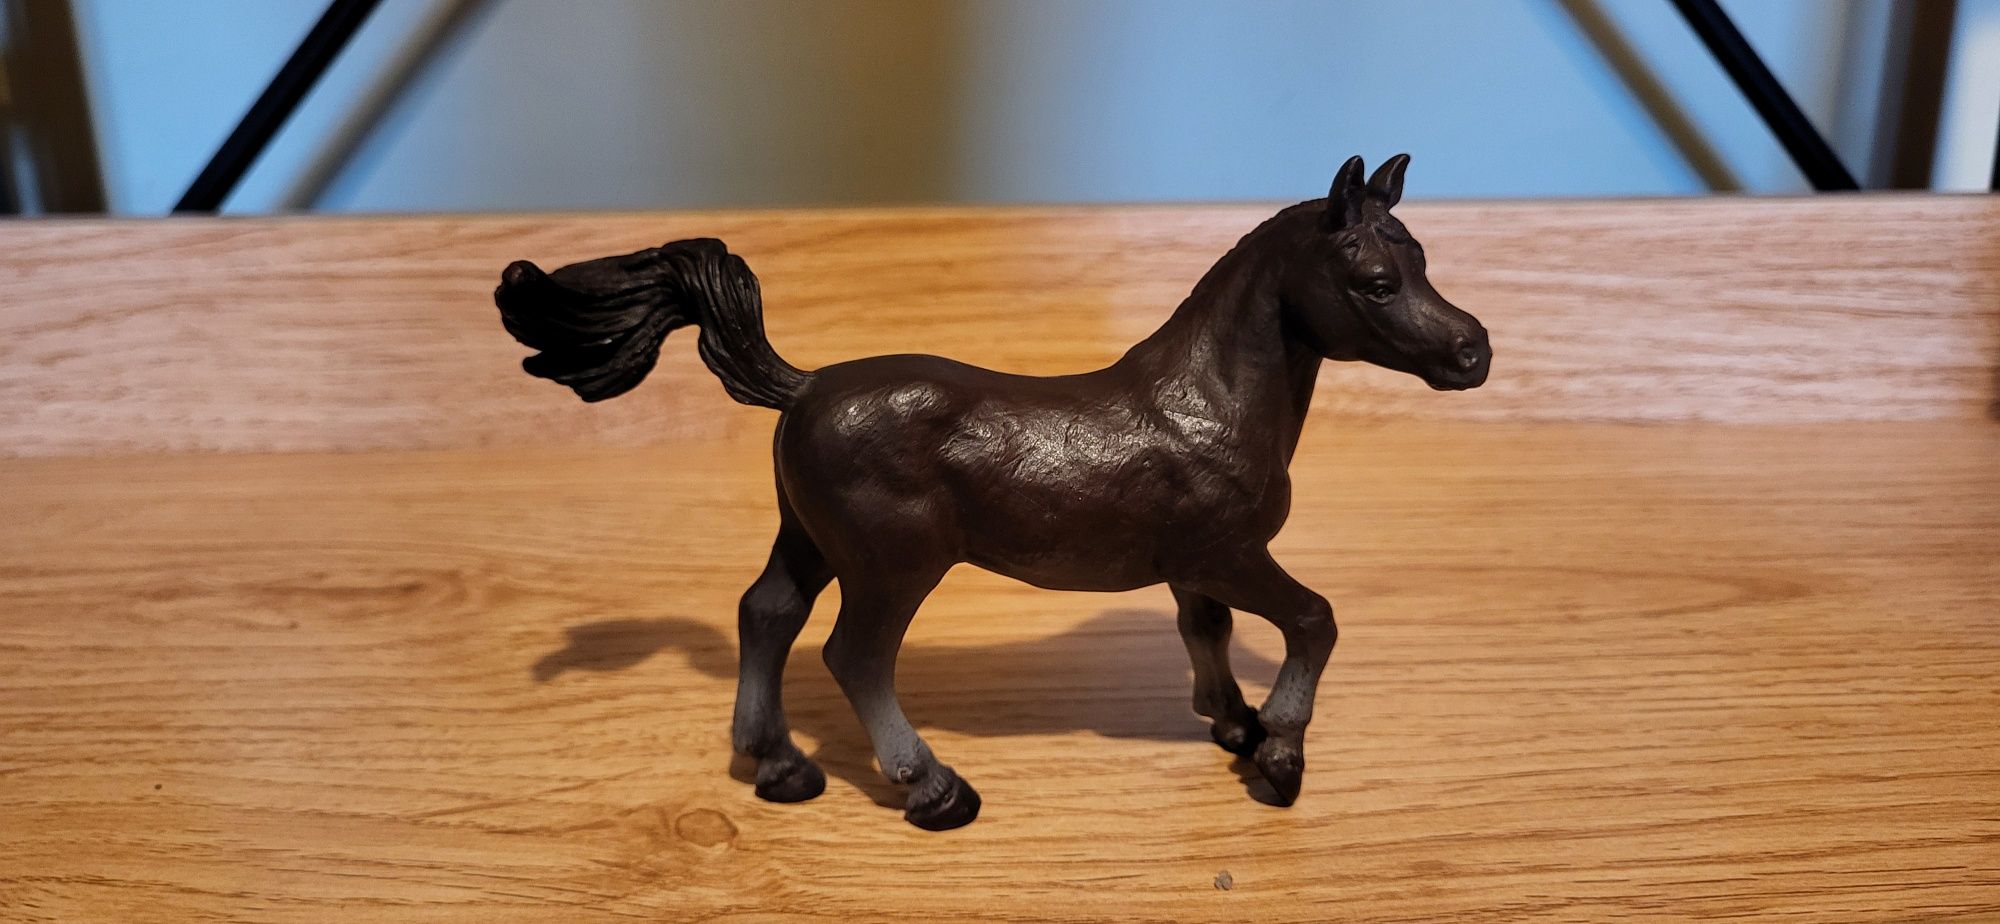 Schleich koń arabski klacz figurka unikat model wycofany z 1992 r.